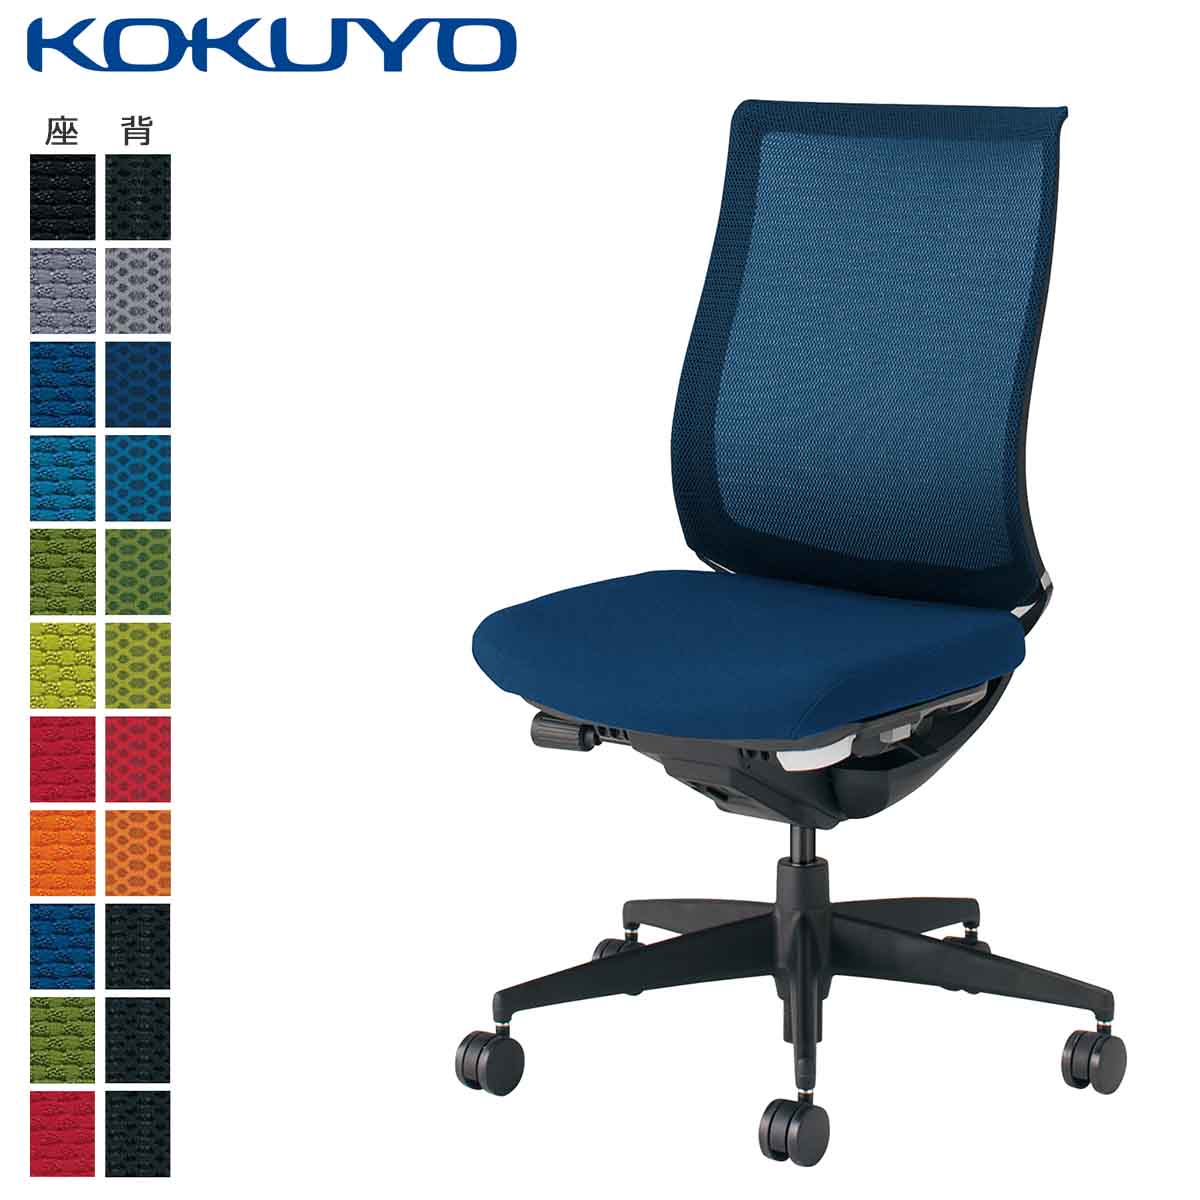 格安激安⑥【KOKUYO/コクヨ】事務用椅子 ブルー 青 デクスチェア チェアー デスクチェア